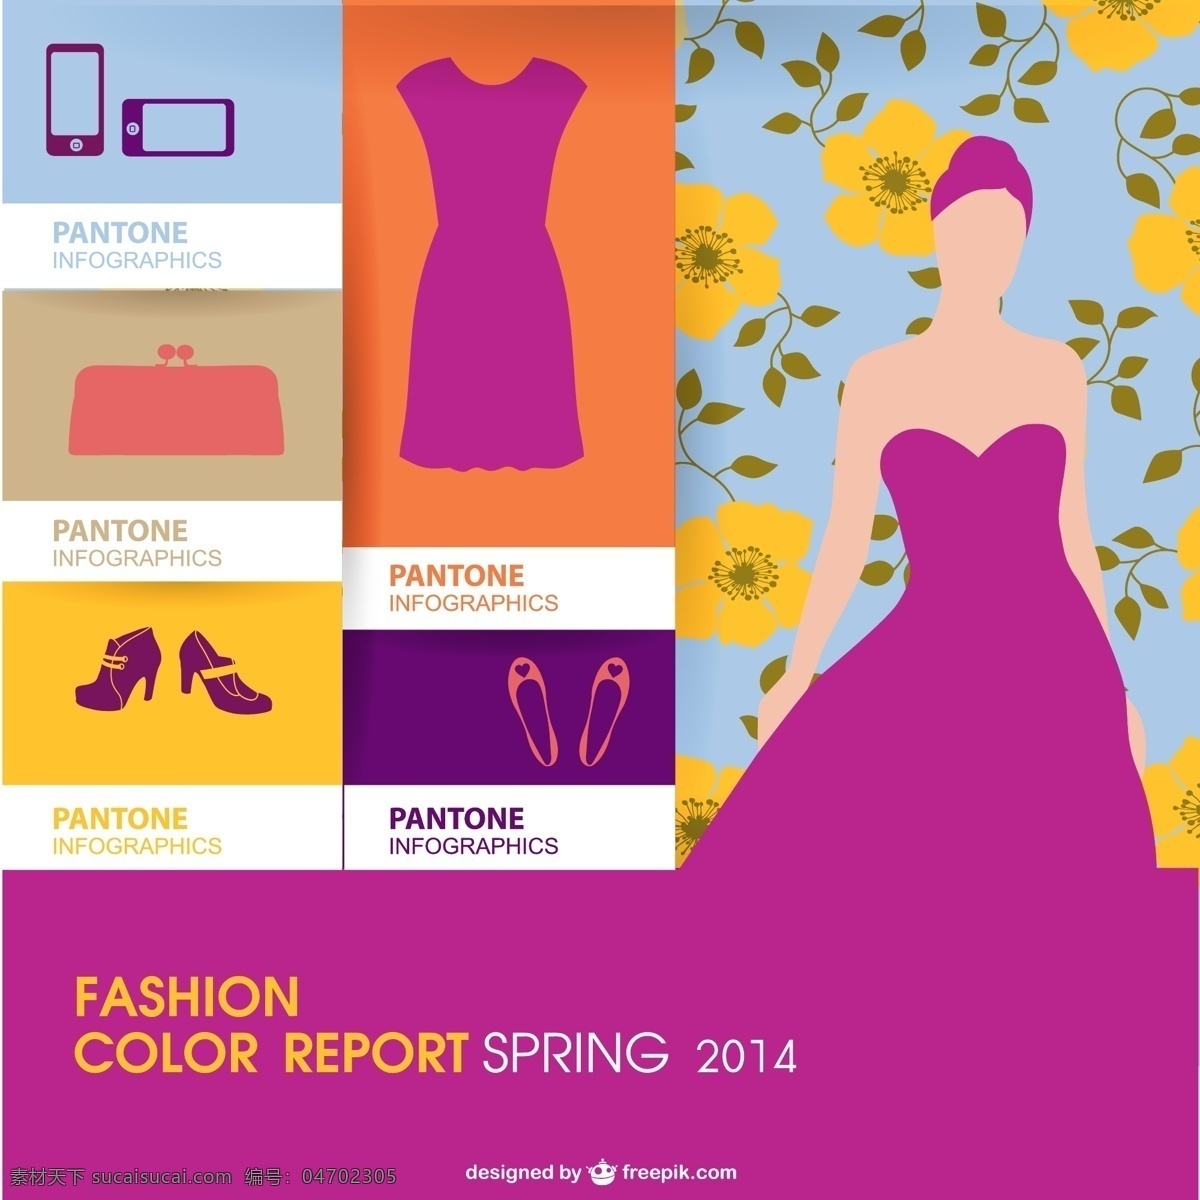 pantone 颜色 代码 趋势 图表 花卉 手机 时尚 模板 弹簧 图形 色彩 轮廓 布局 衣服 平面设计 服装 图表设计 紫色